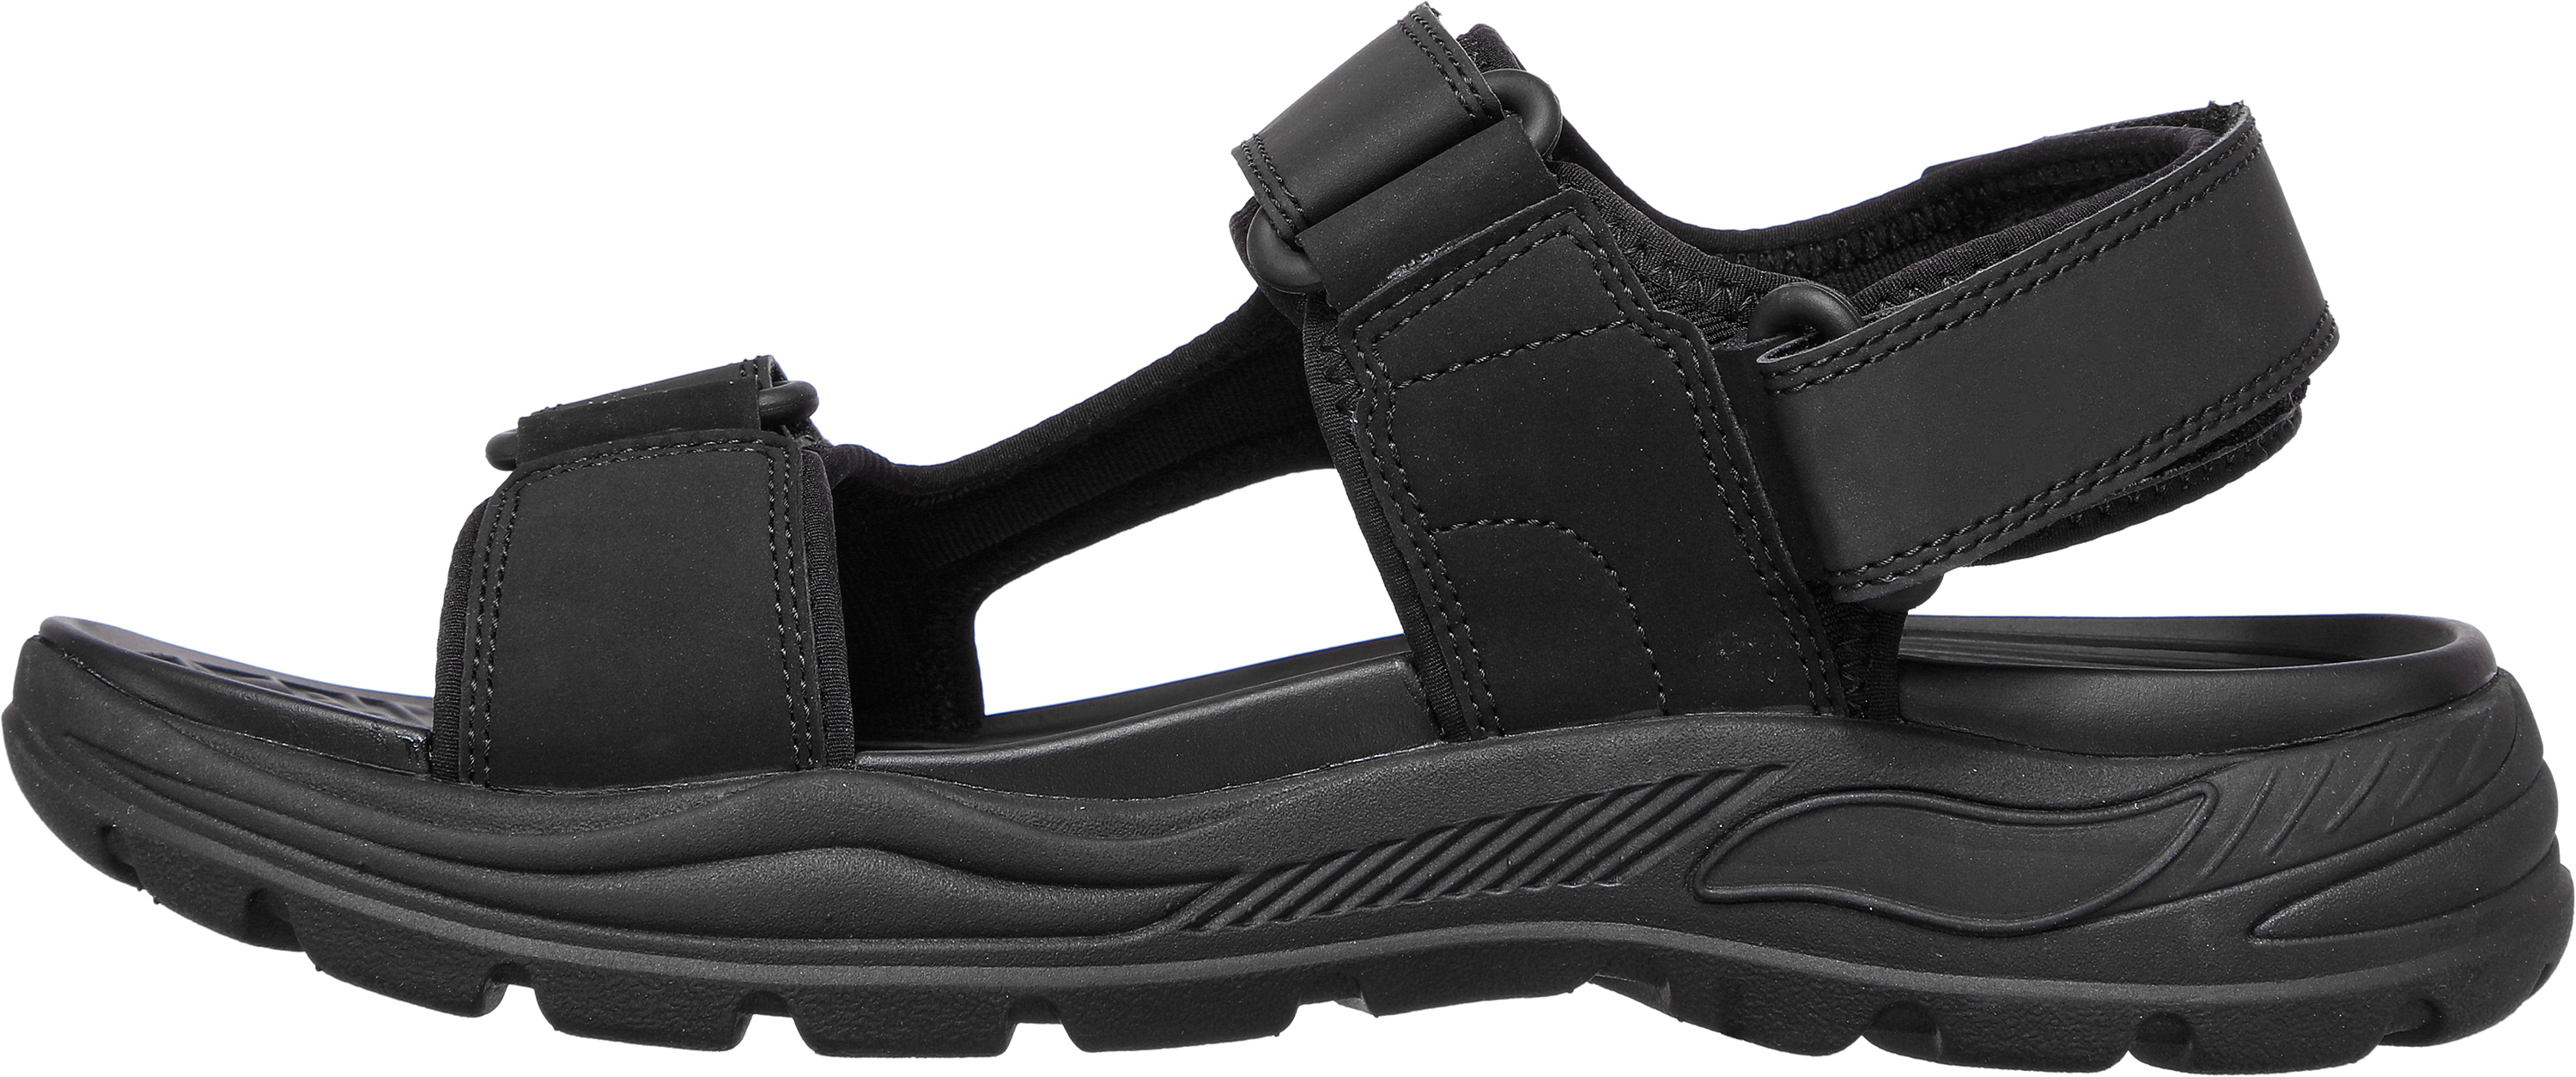 Men's Skechers Sandals | Stock, Shipped - SandalShop